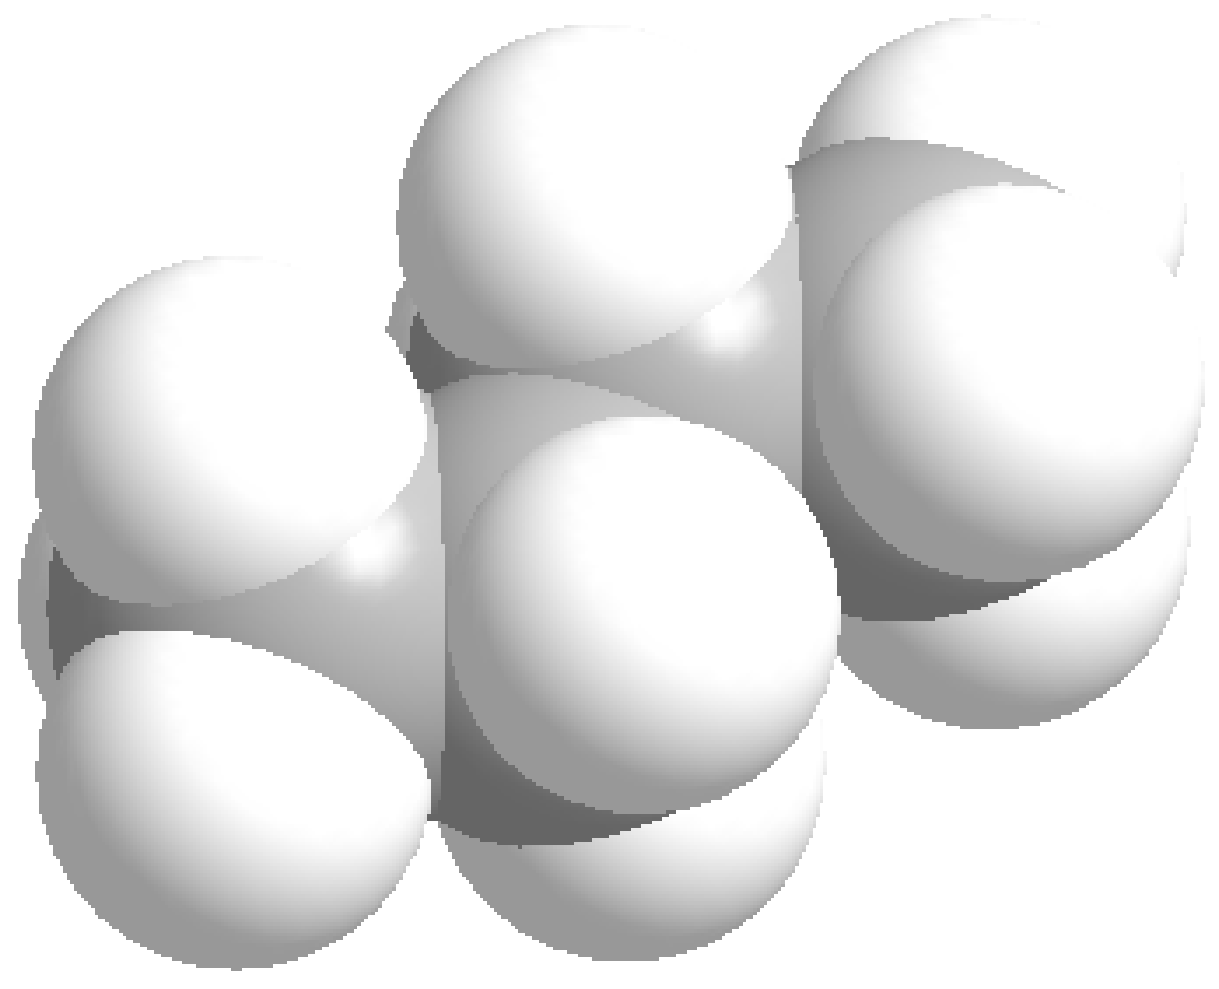 Metano ( 4 ) Peso molecular = 16.0 g/mol Temp. ebullición = -165º Propano ( 3 2 3 ) Peso molecular = 44.1 g/mol Temp. ebullición = -44.